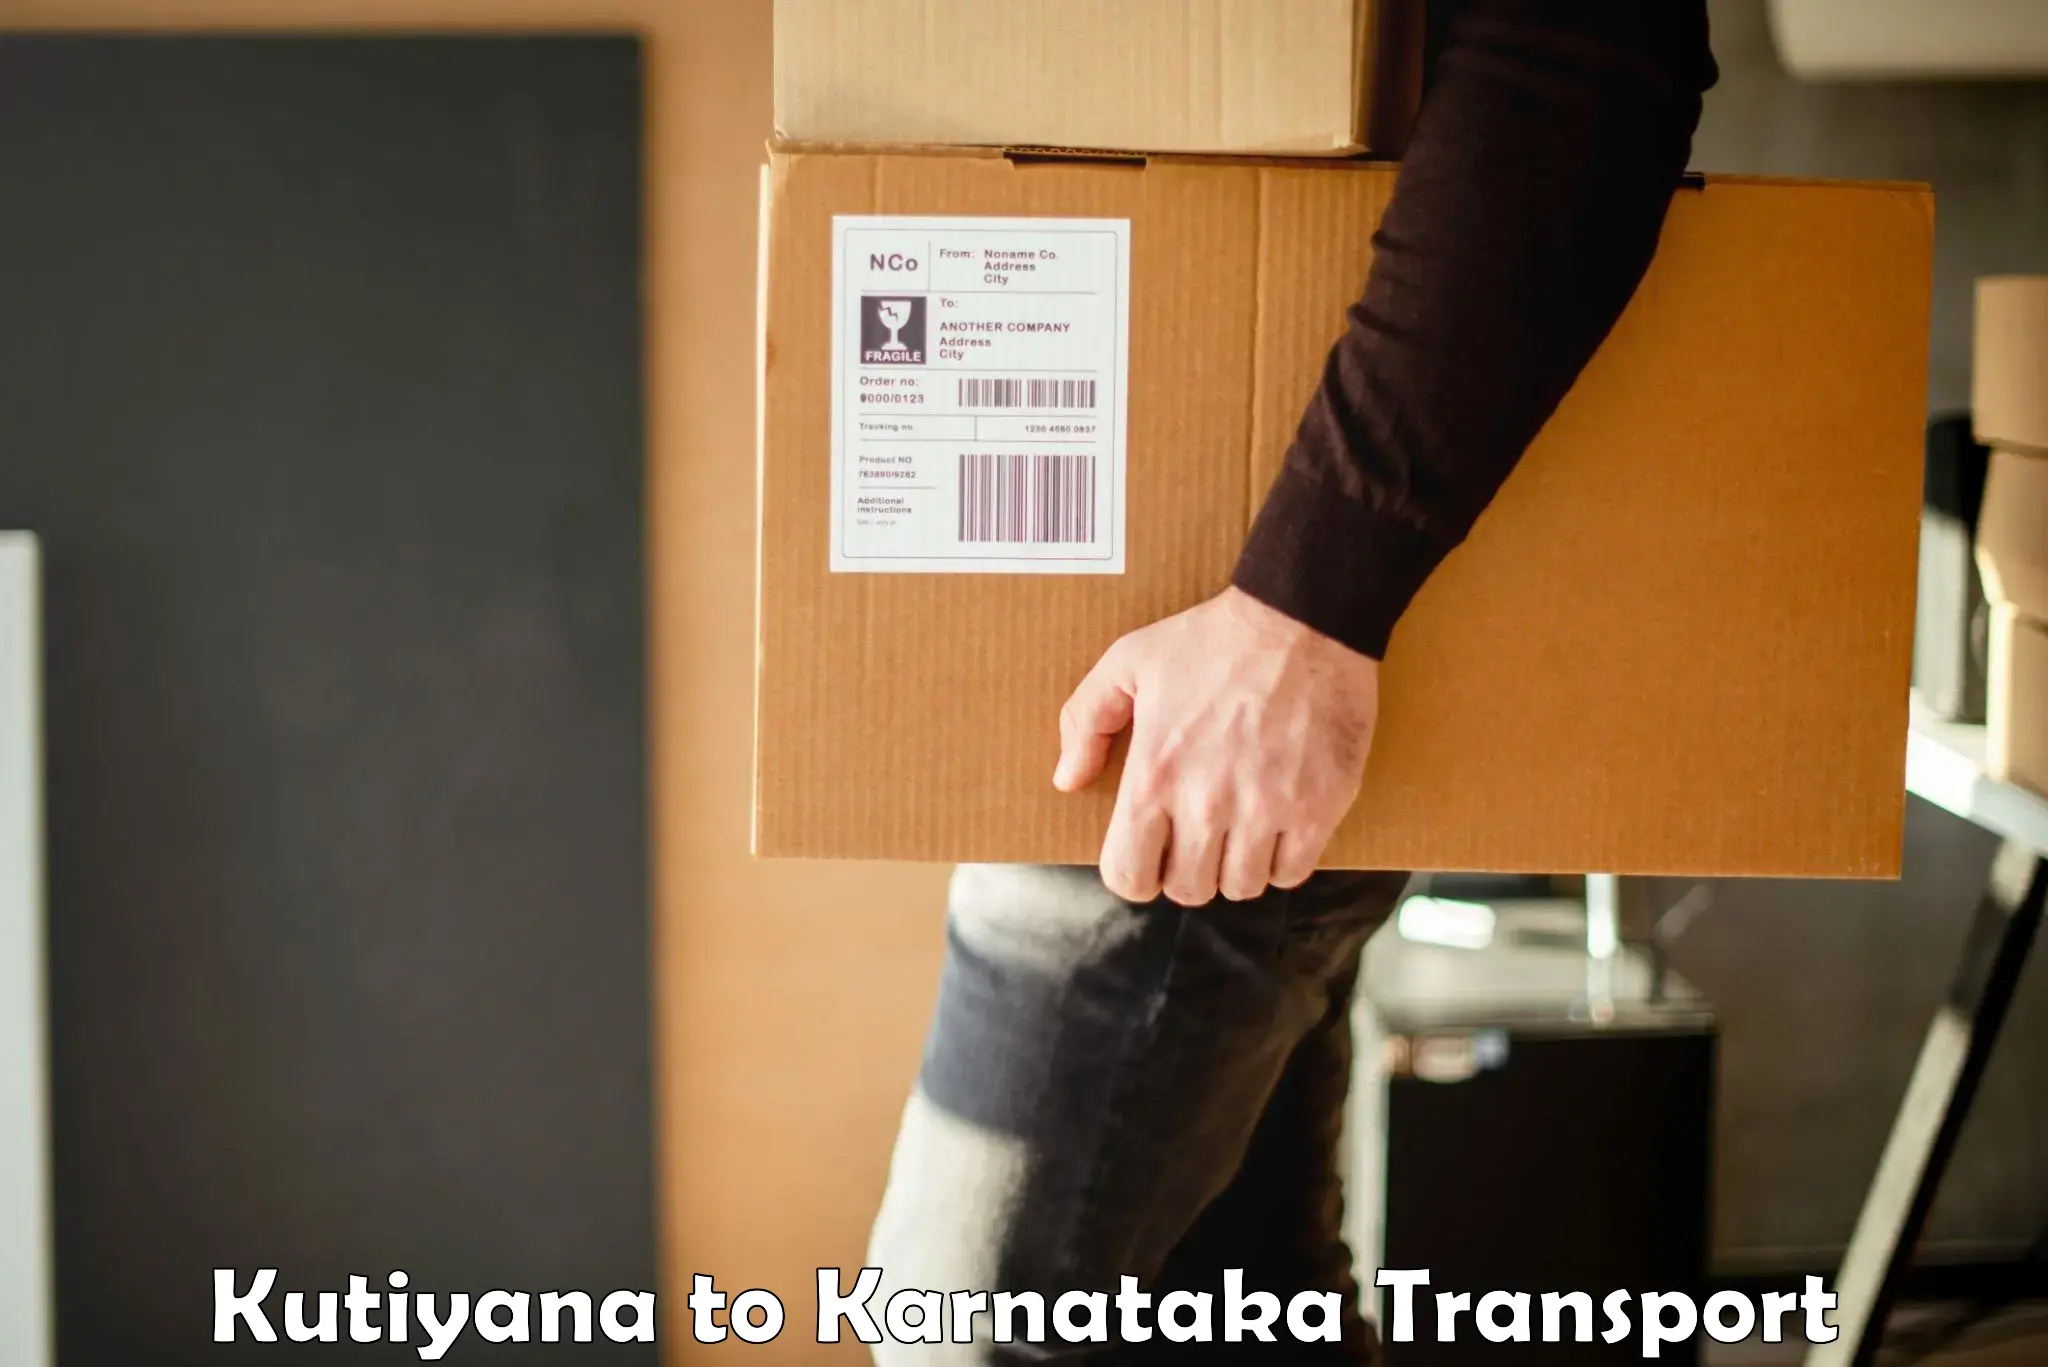 Shipping partner Kutiyana to Maramanahalli